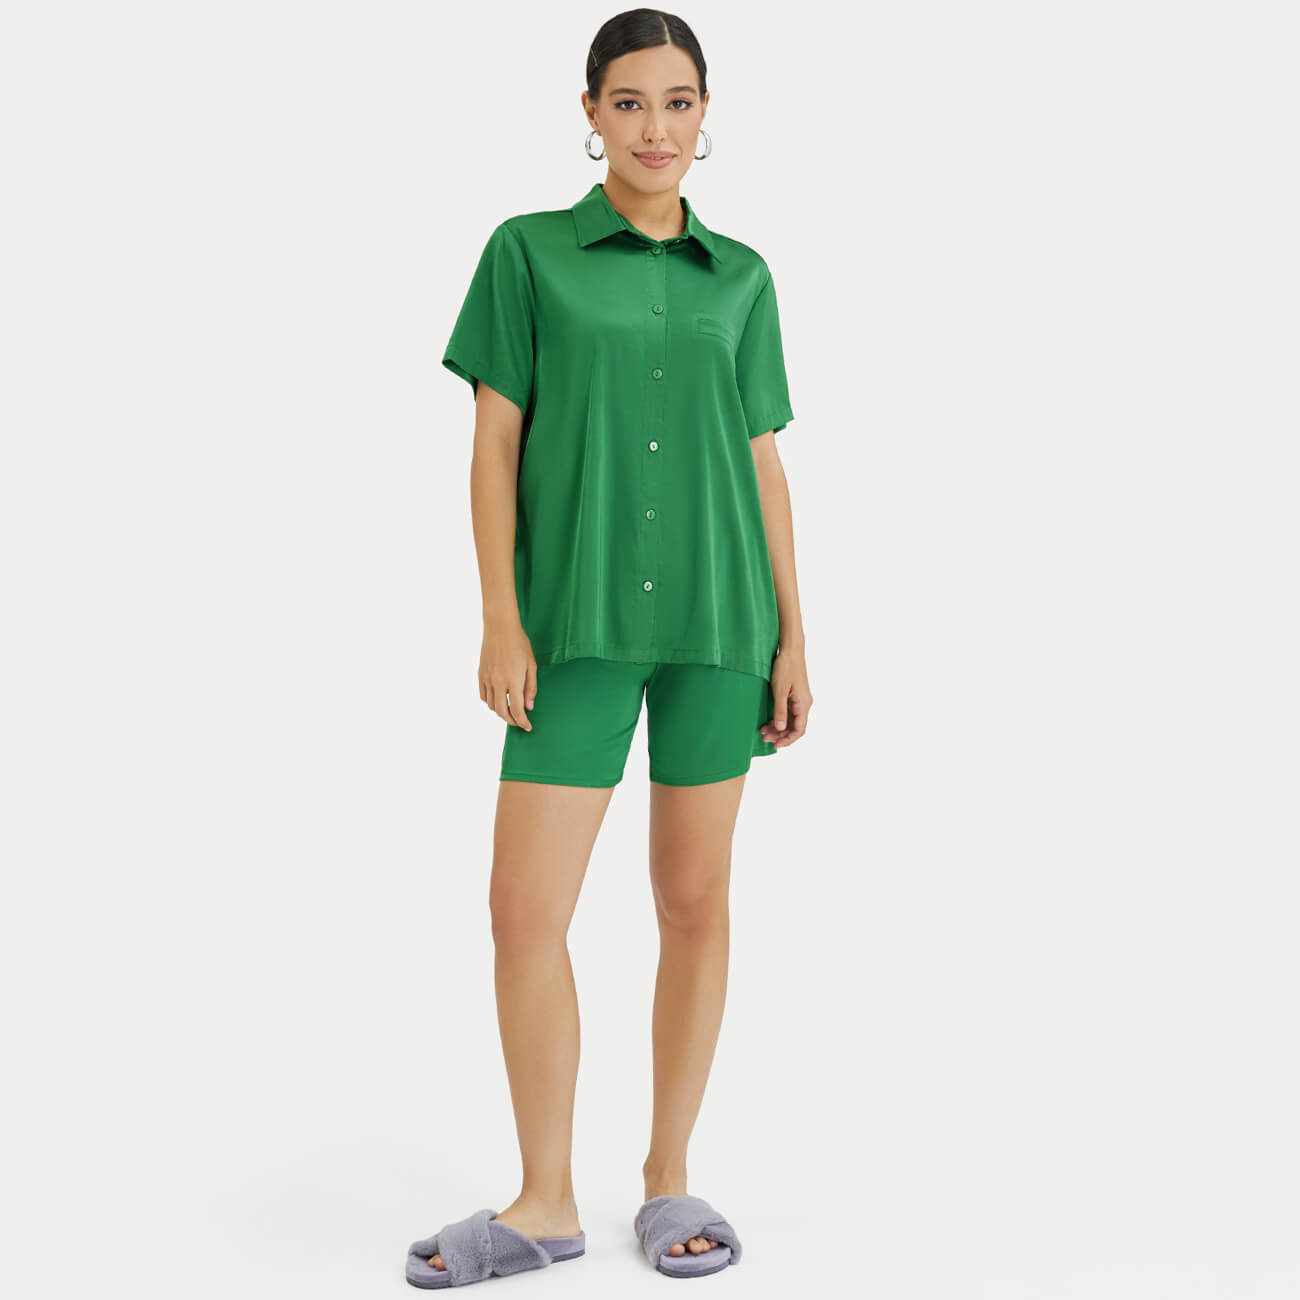 Шорты женские, р. XL, полиэстер/эластан, зеленые, Madeline женские шорты с завышенной талией yas